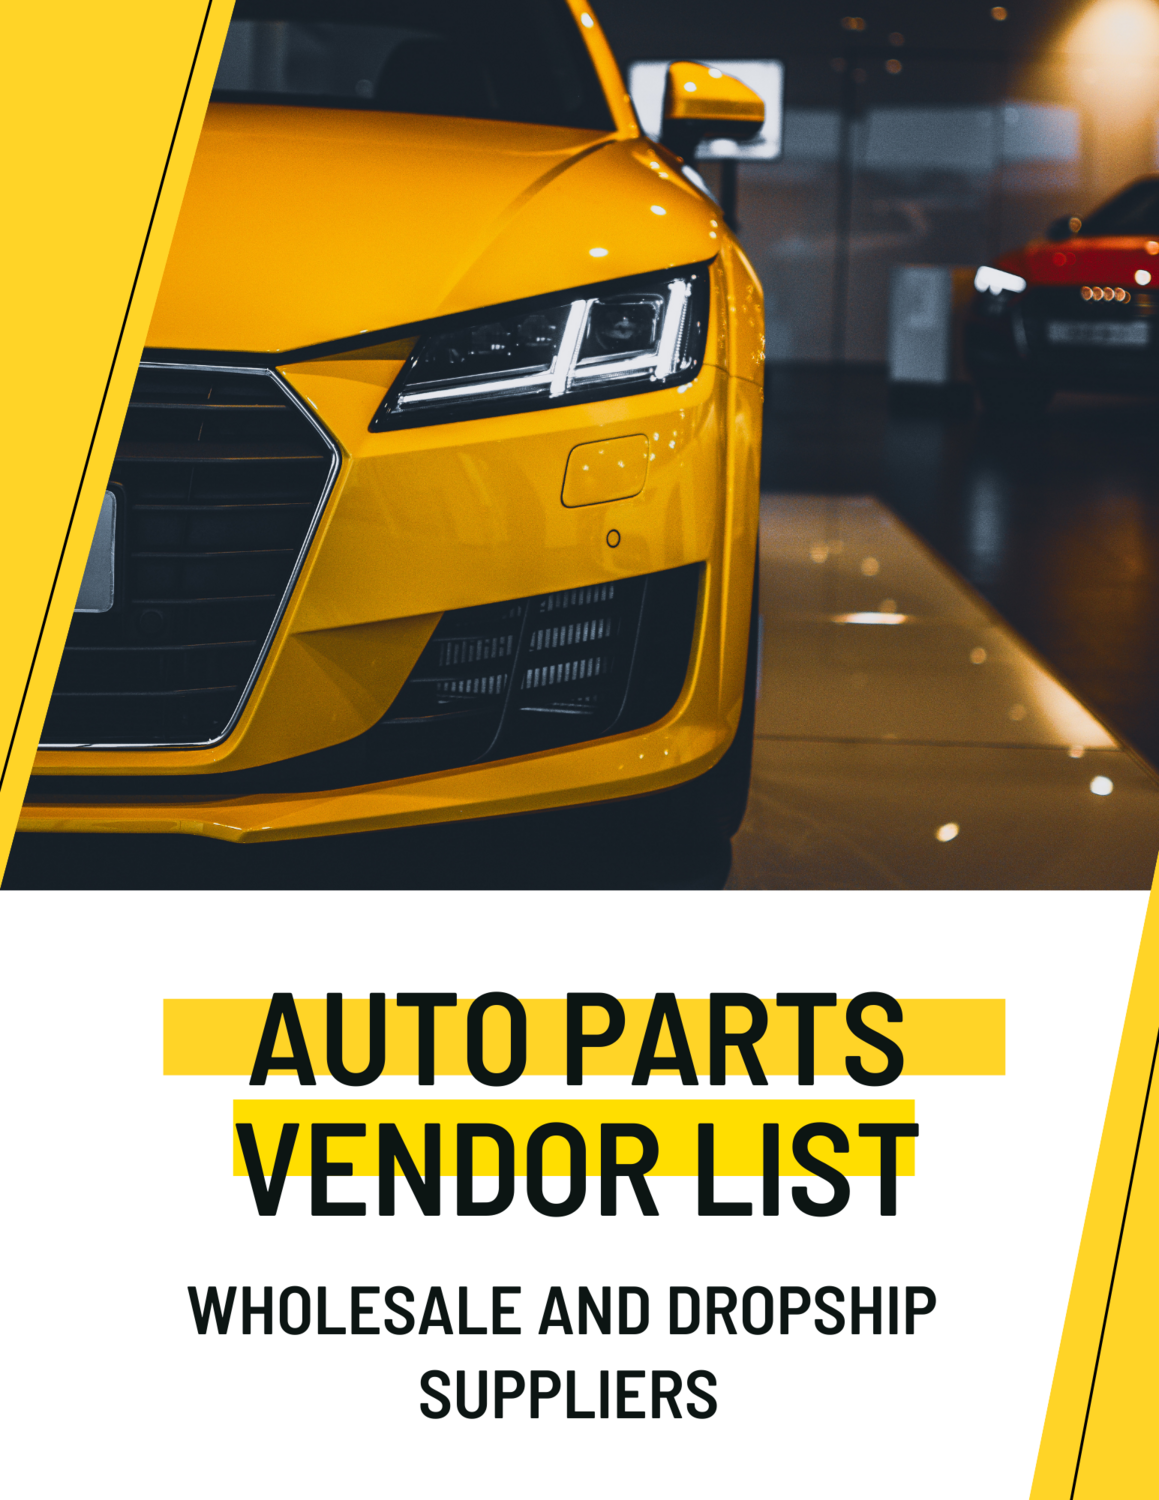 Wholesale Auto Parts Suppliers and Drop Ship Auto Parts Vendor List